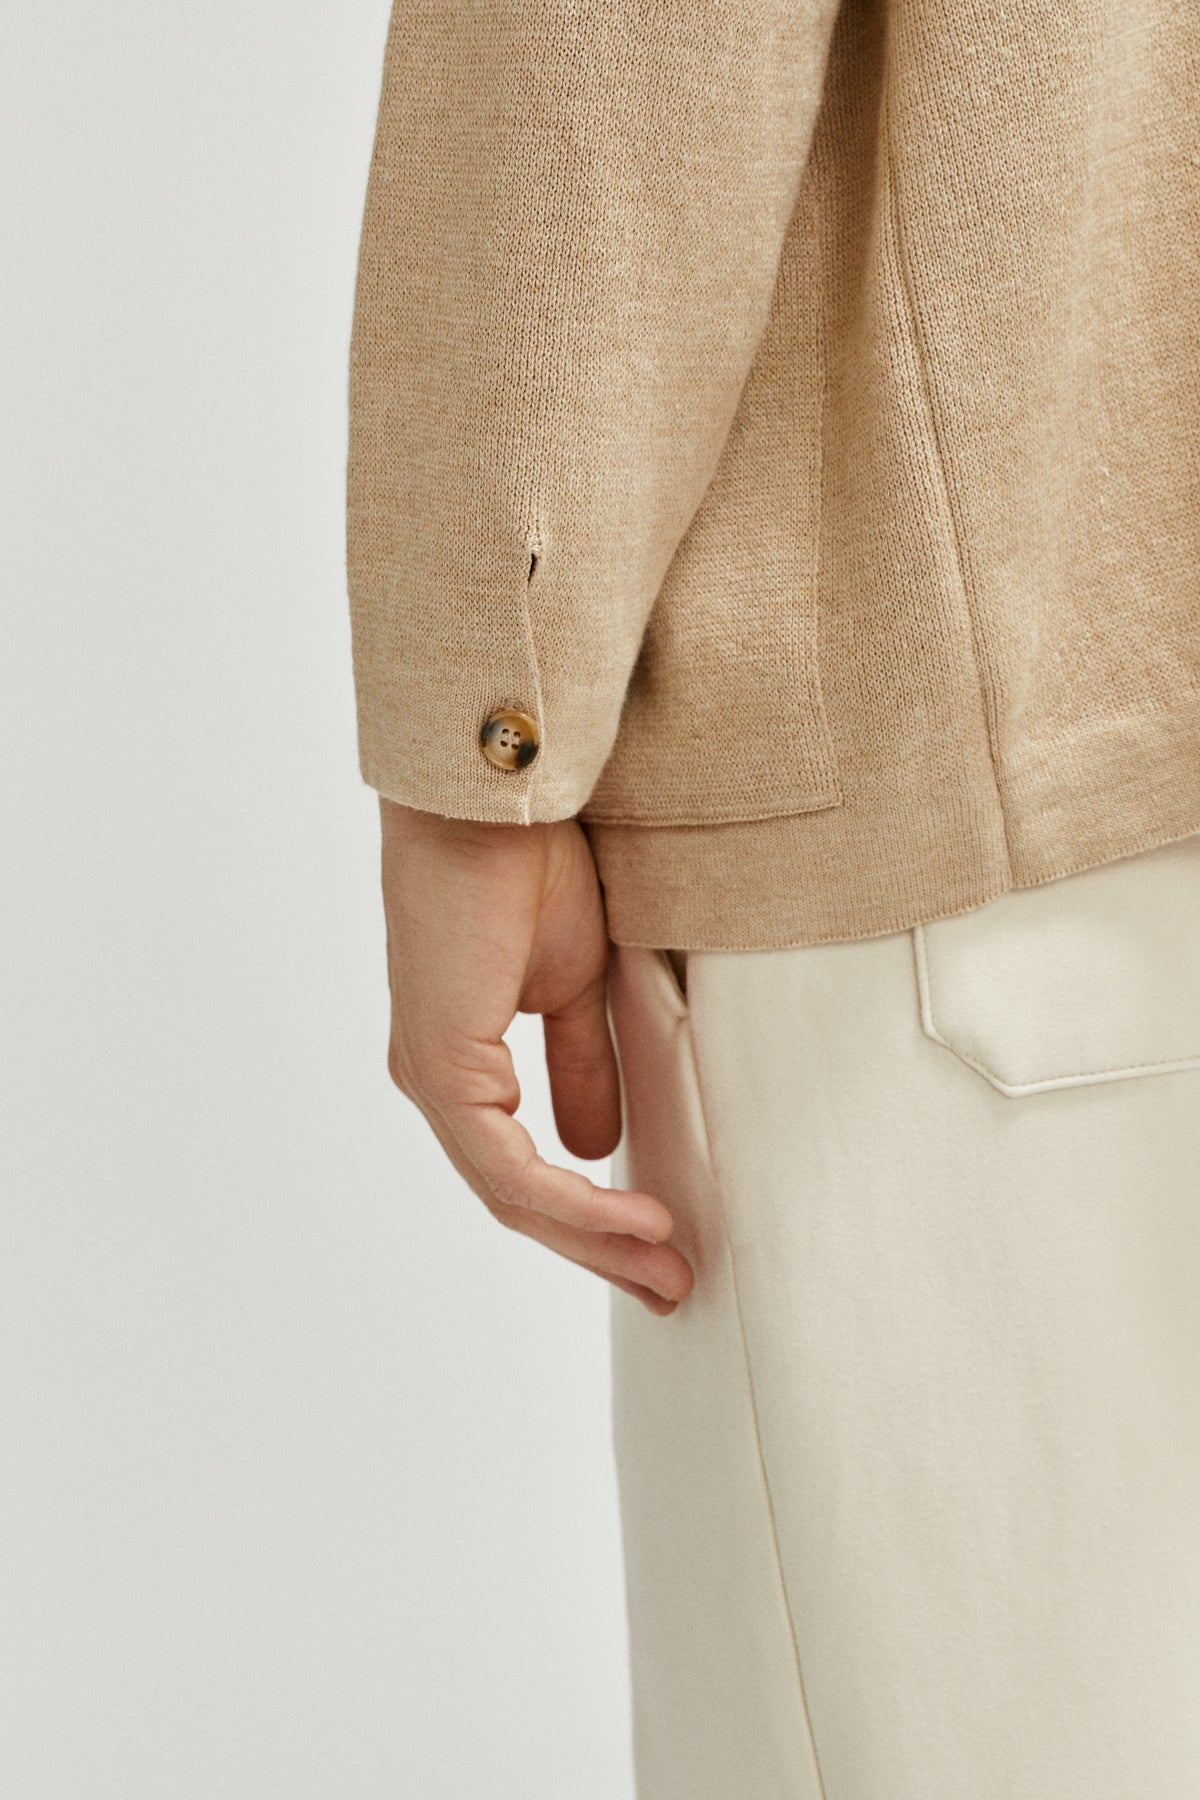 Beige | The Linen Cotton Jacket